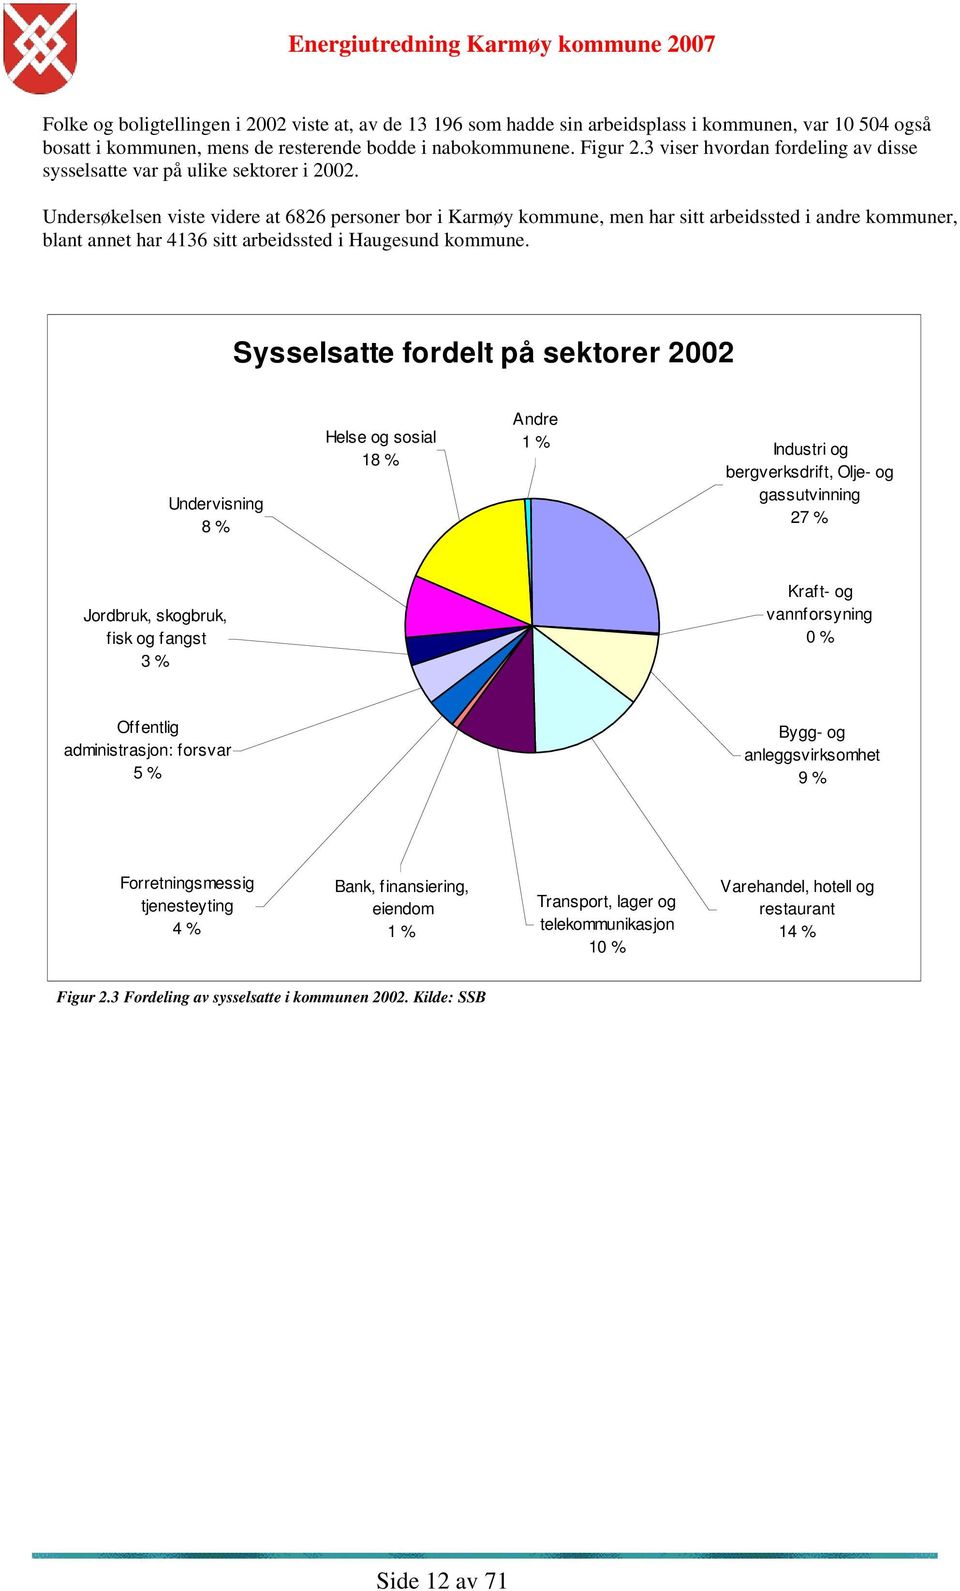 Undersøkelsen viste videre at 6826 personer bor i Karmøy kommune, men har sitt arbeidssted i andre kommuner, blant annet har 4136 sitt arbeidssted i Haugesund kommune.